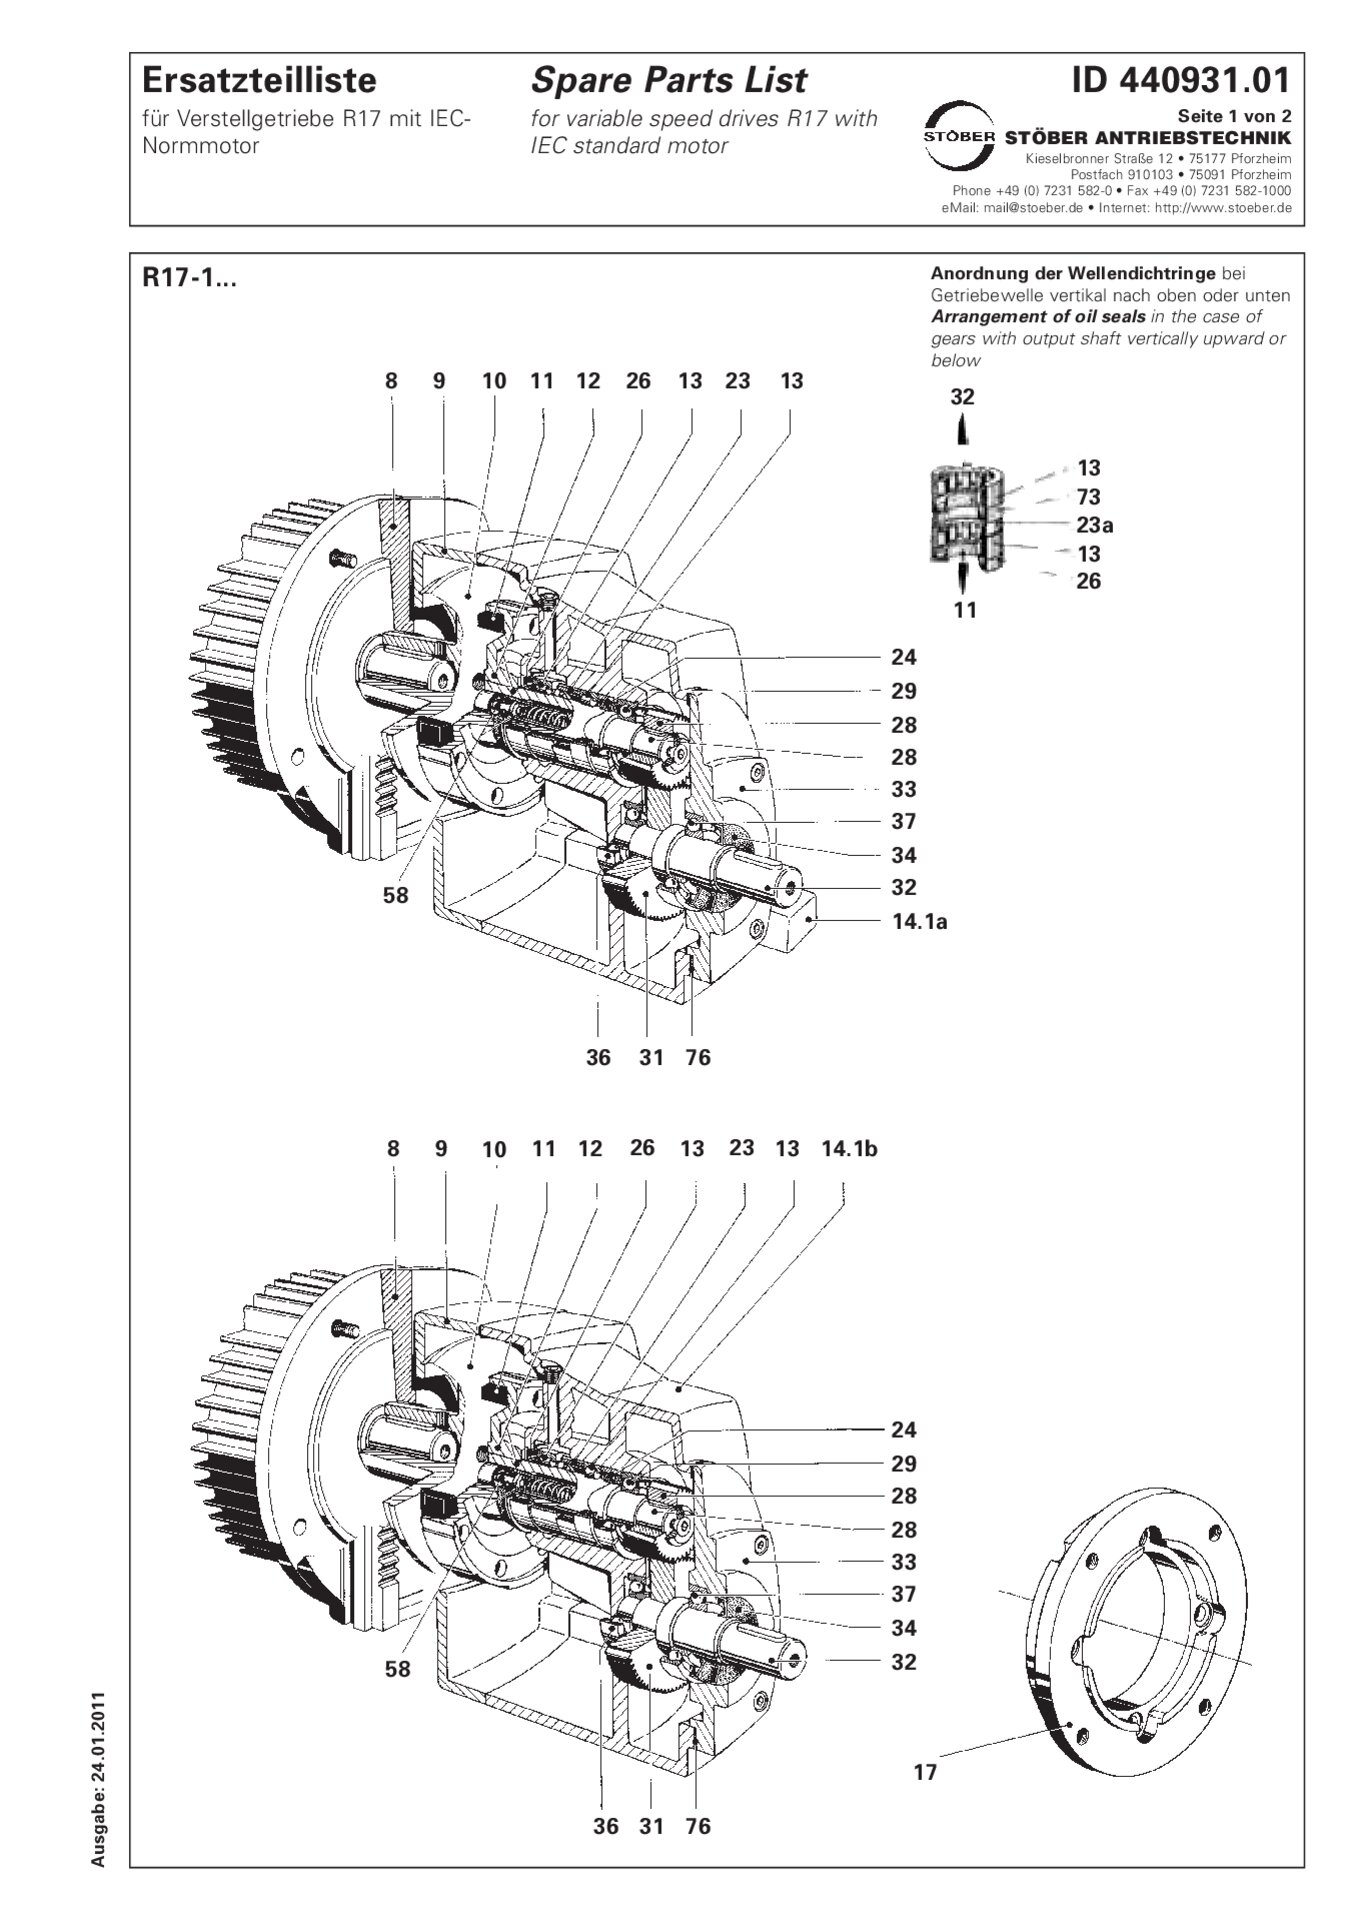 Liste des pièces de rechange R17-1 avec moteur standard IEC